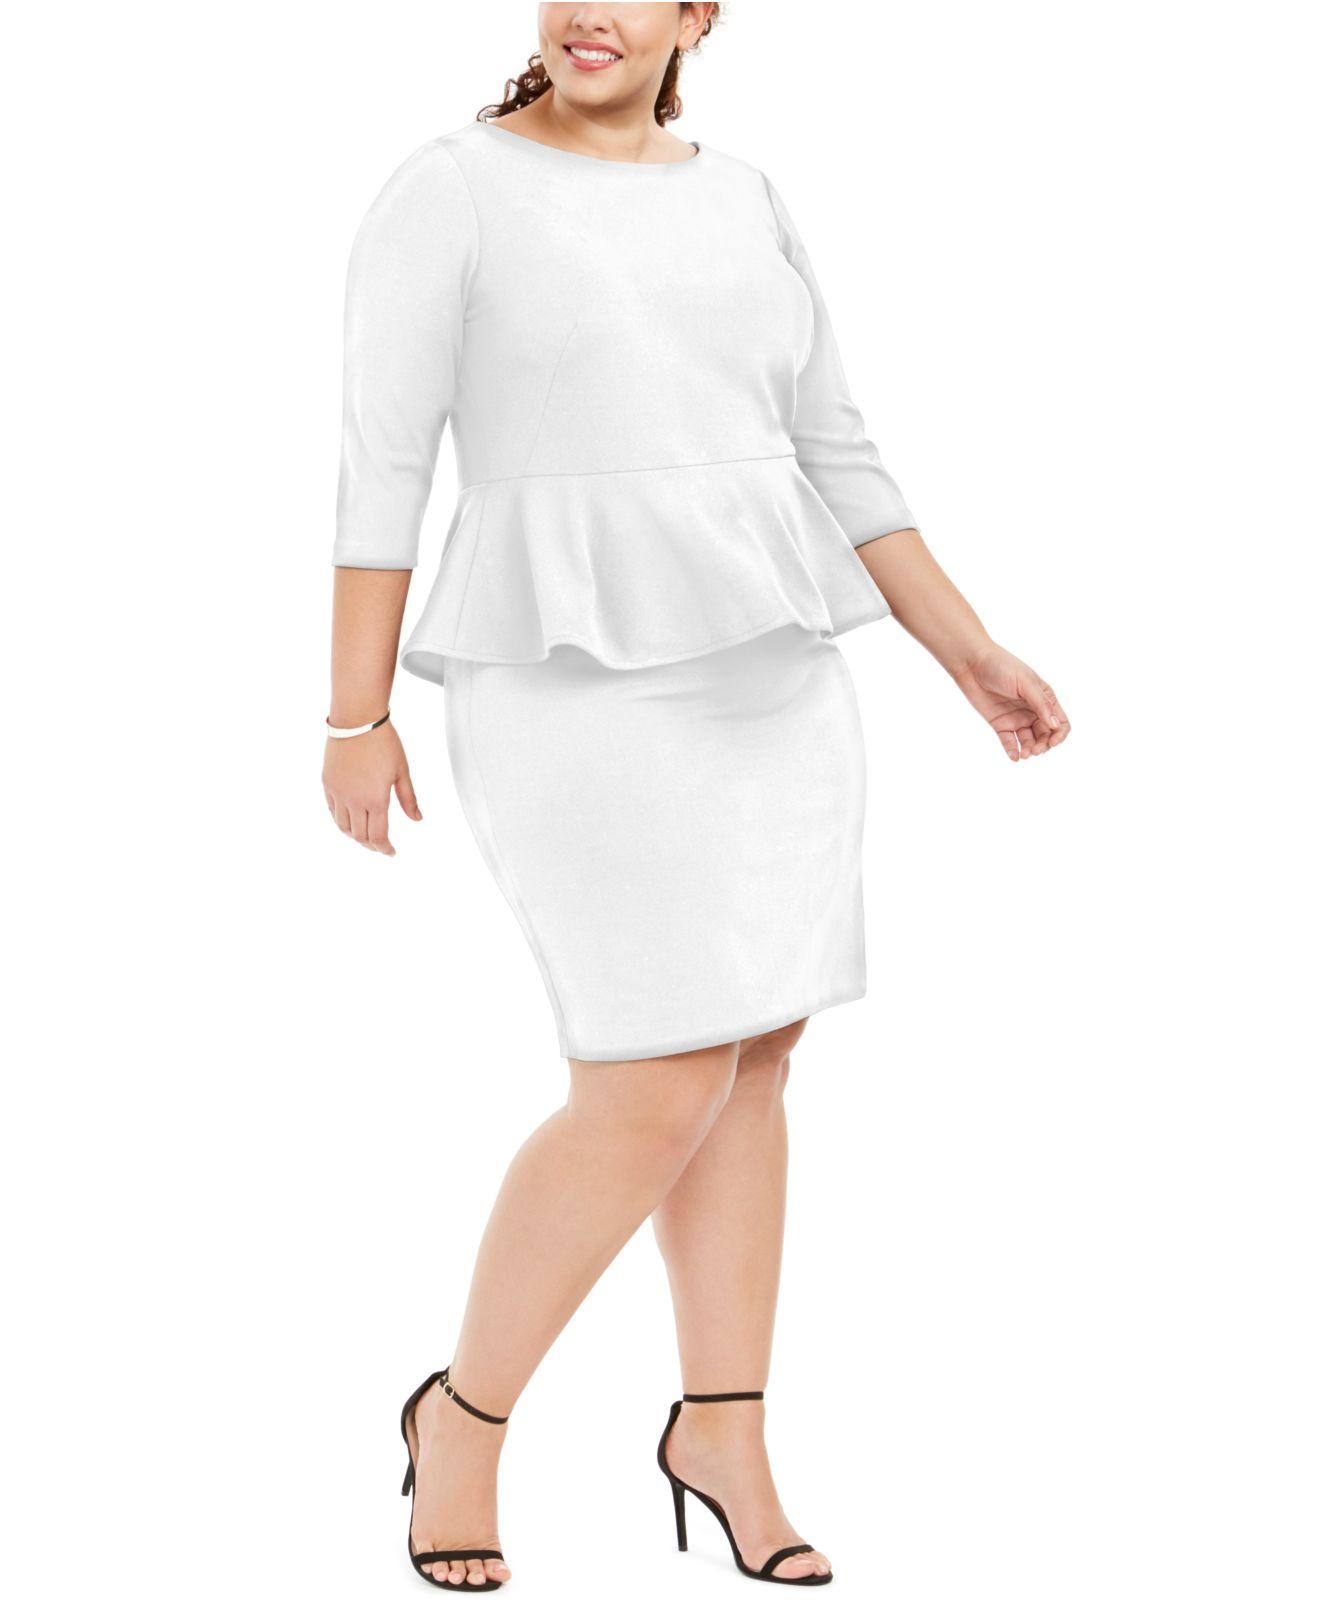 Klein Plus Size Peplum Sheath Dress in White